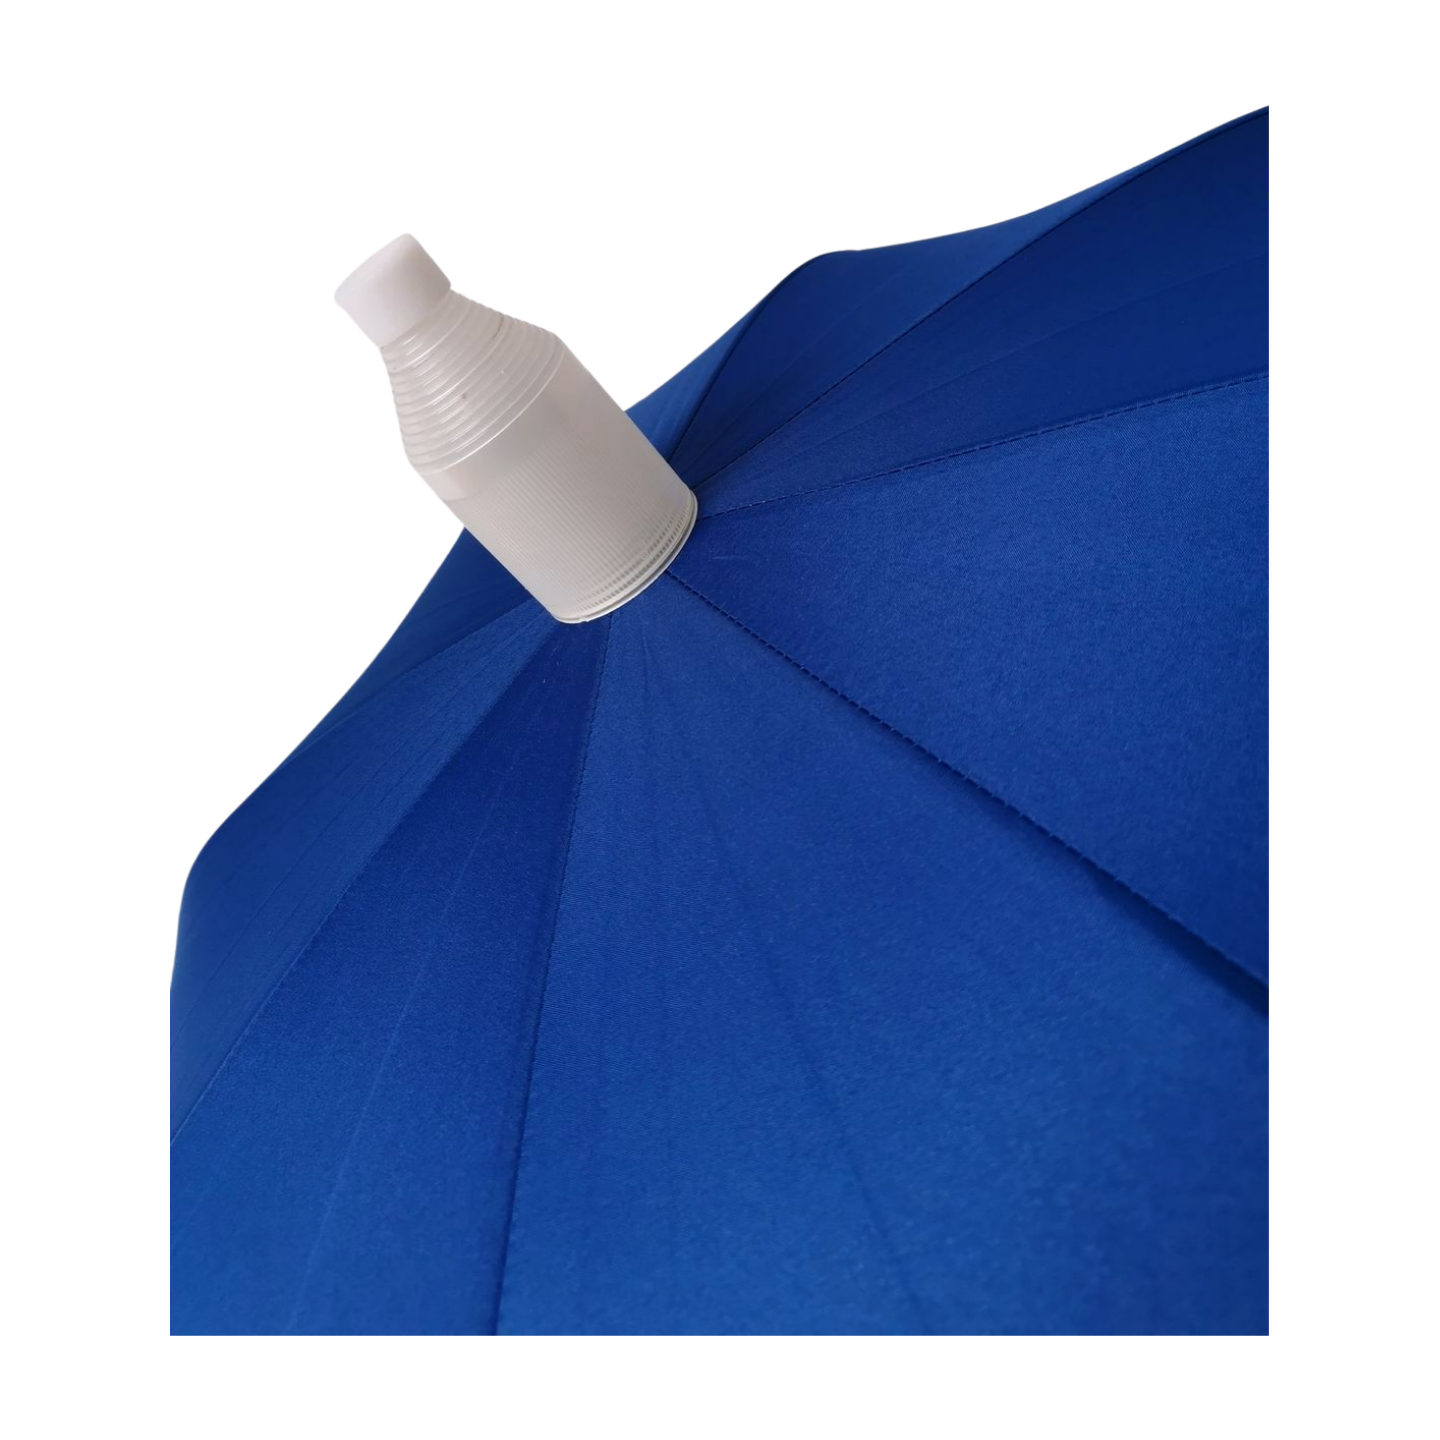 https://www.hodaumbrella.com/straight-umbre…-plastic-cover-product/